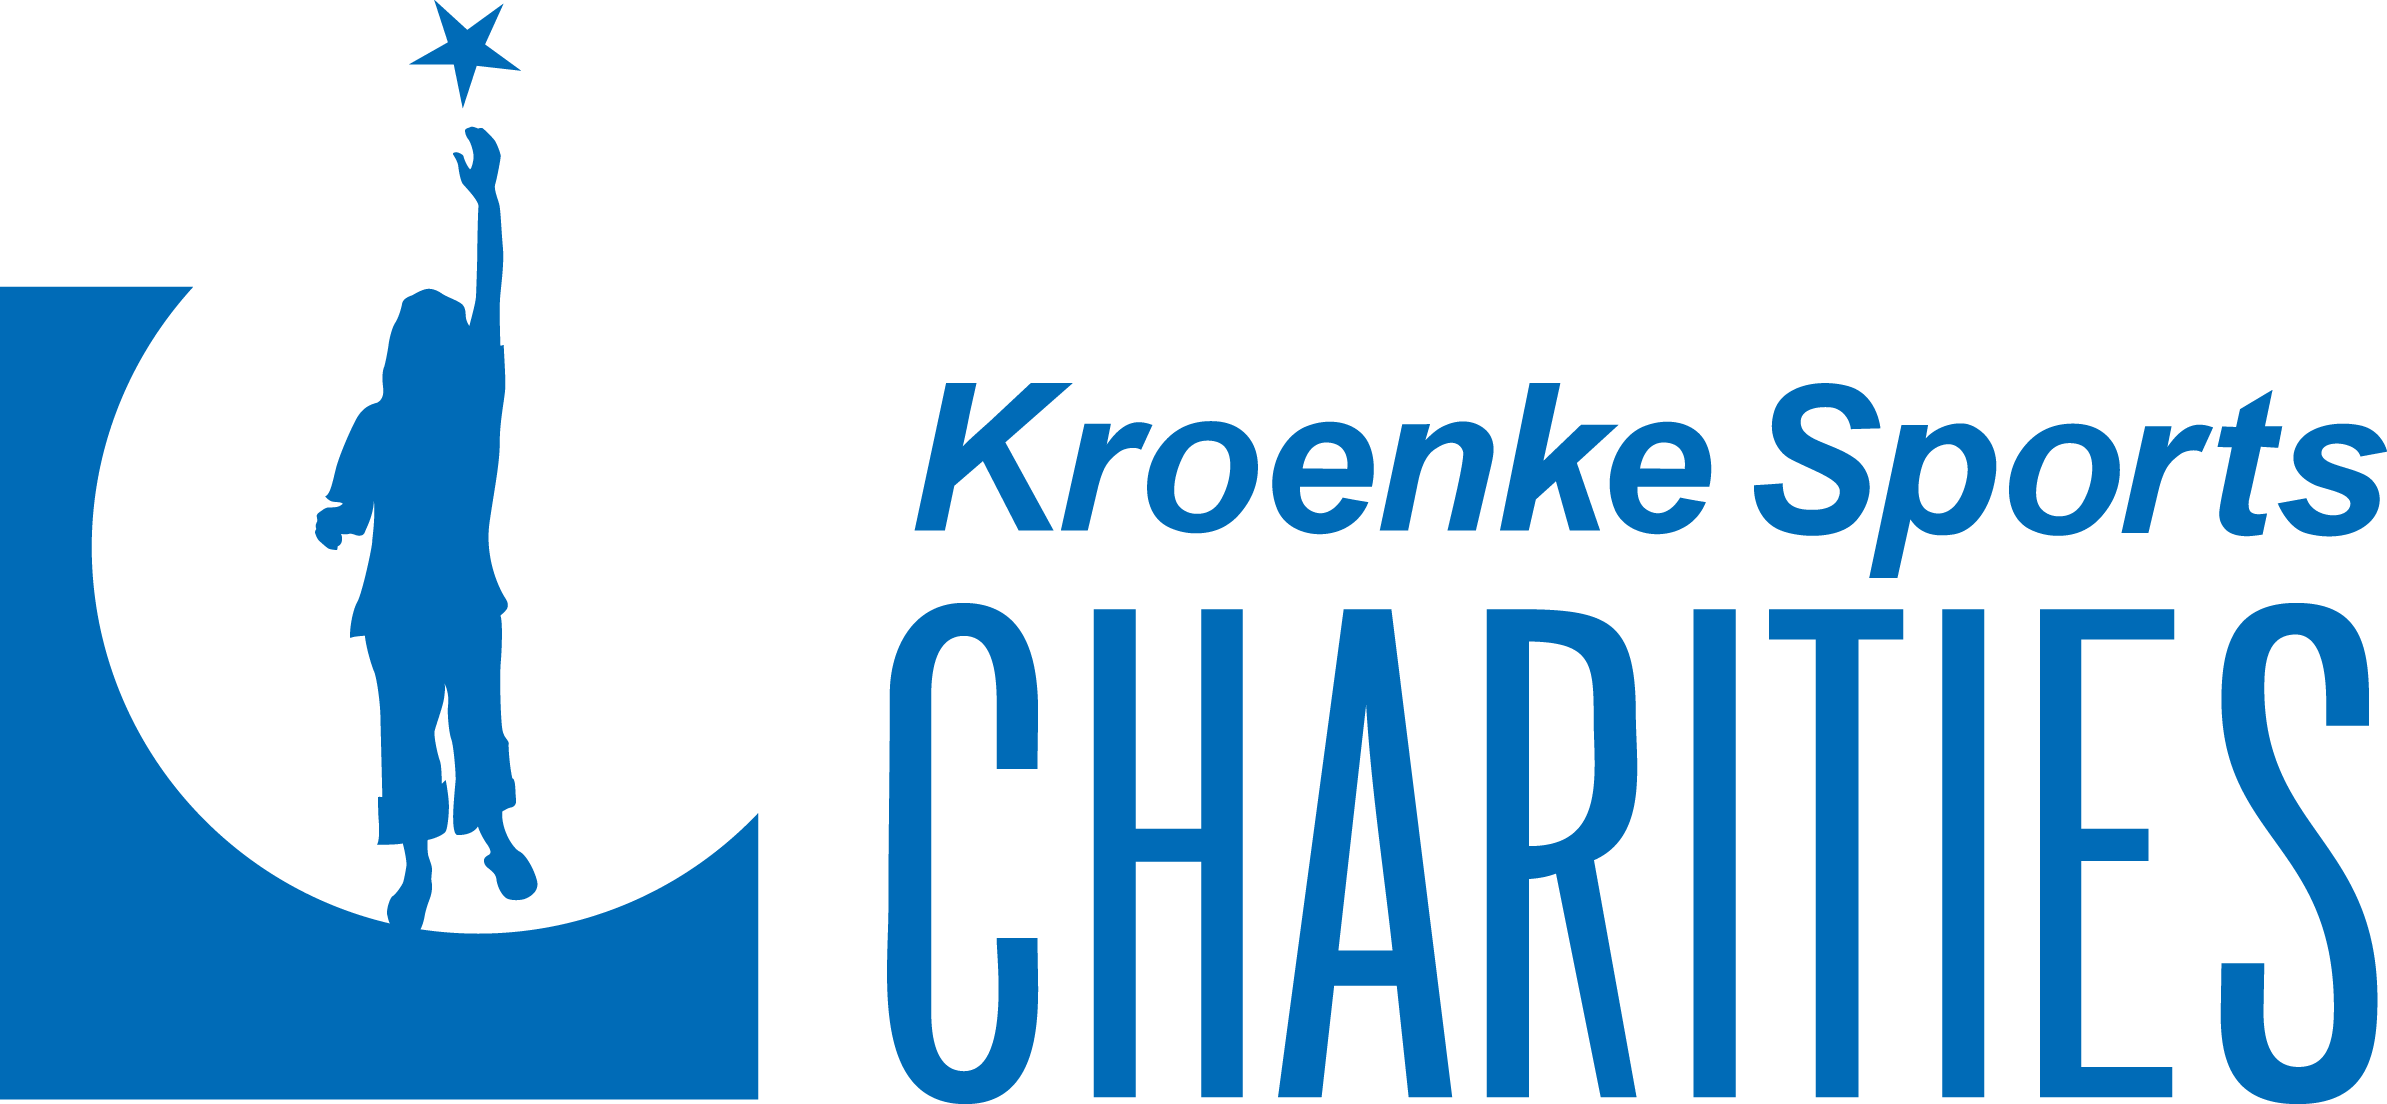 KroenkeSportsCharities_noTagline_C_horz